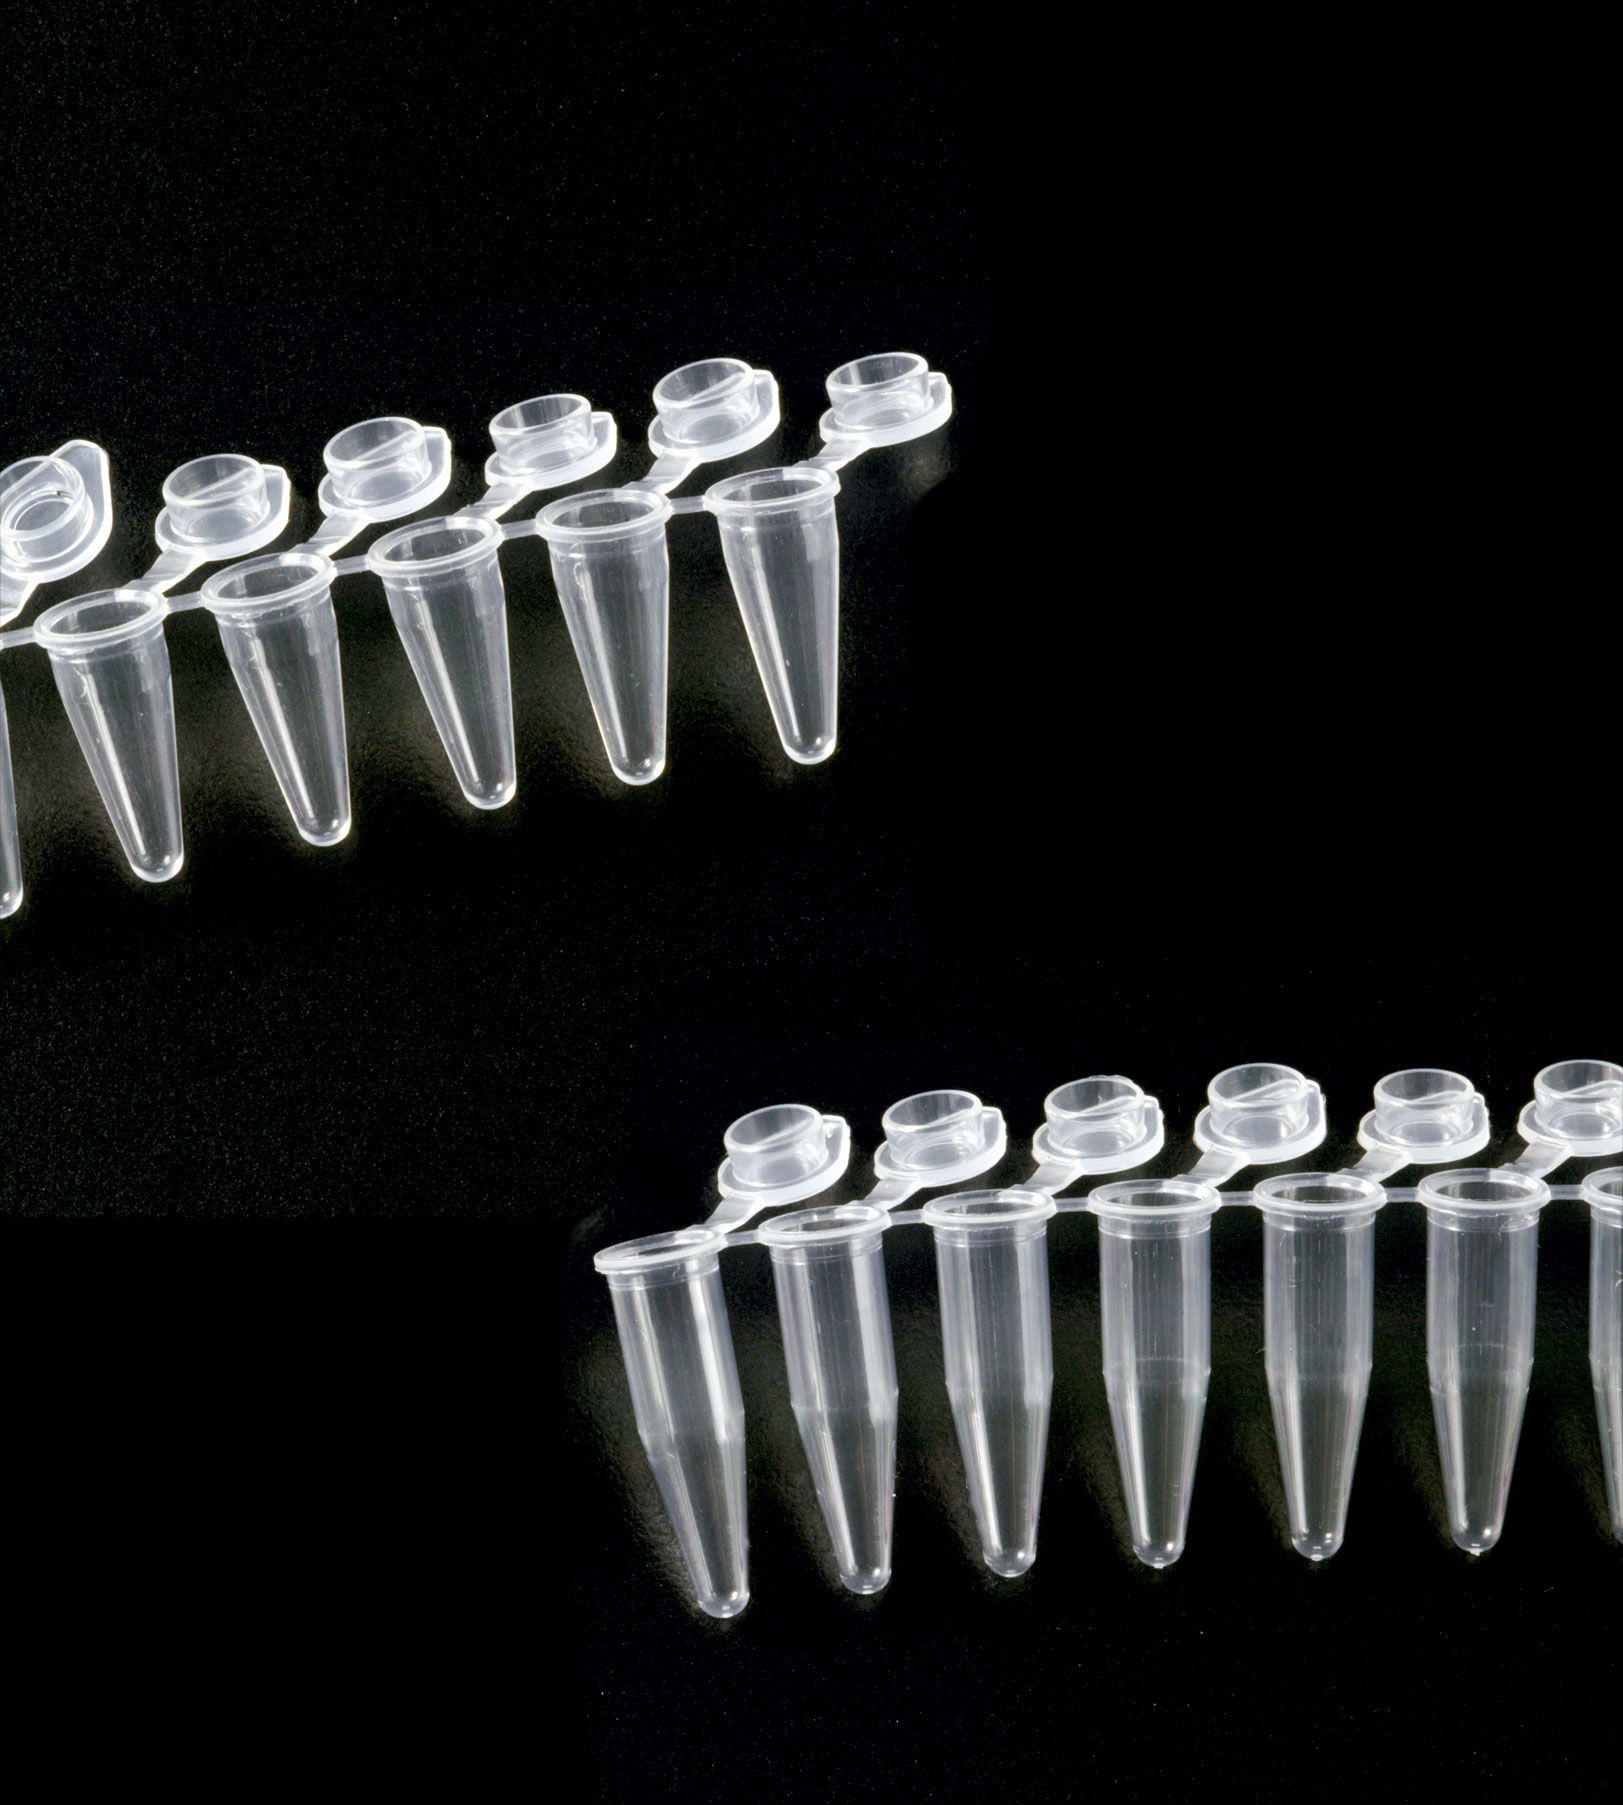 Tubo para PCR 0,2ml en tiras, tipo 1. DELTALAB. Tiras de 8 Tubo y 8 tapones unidos